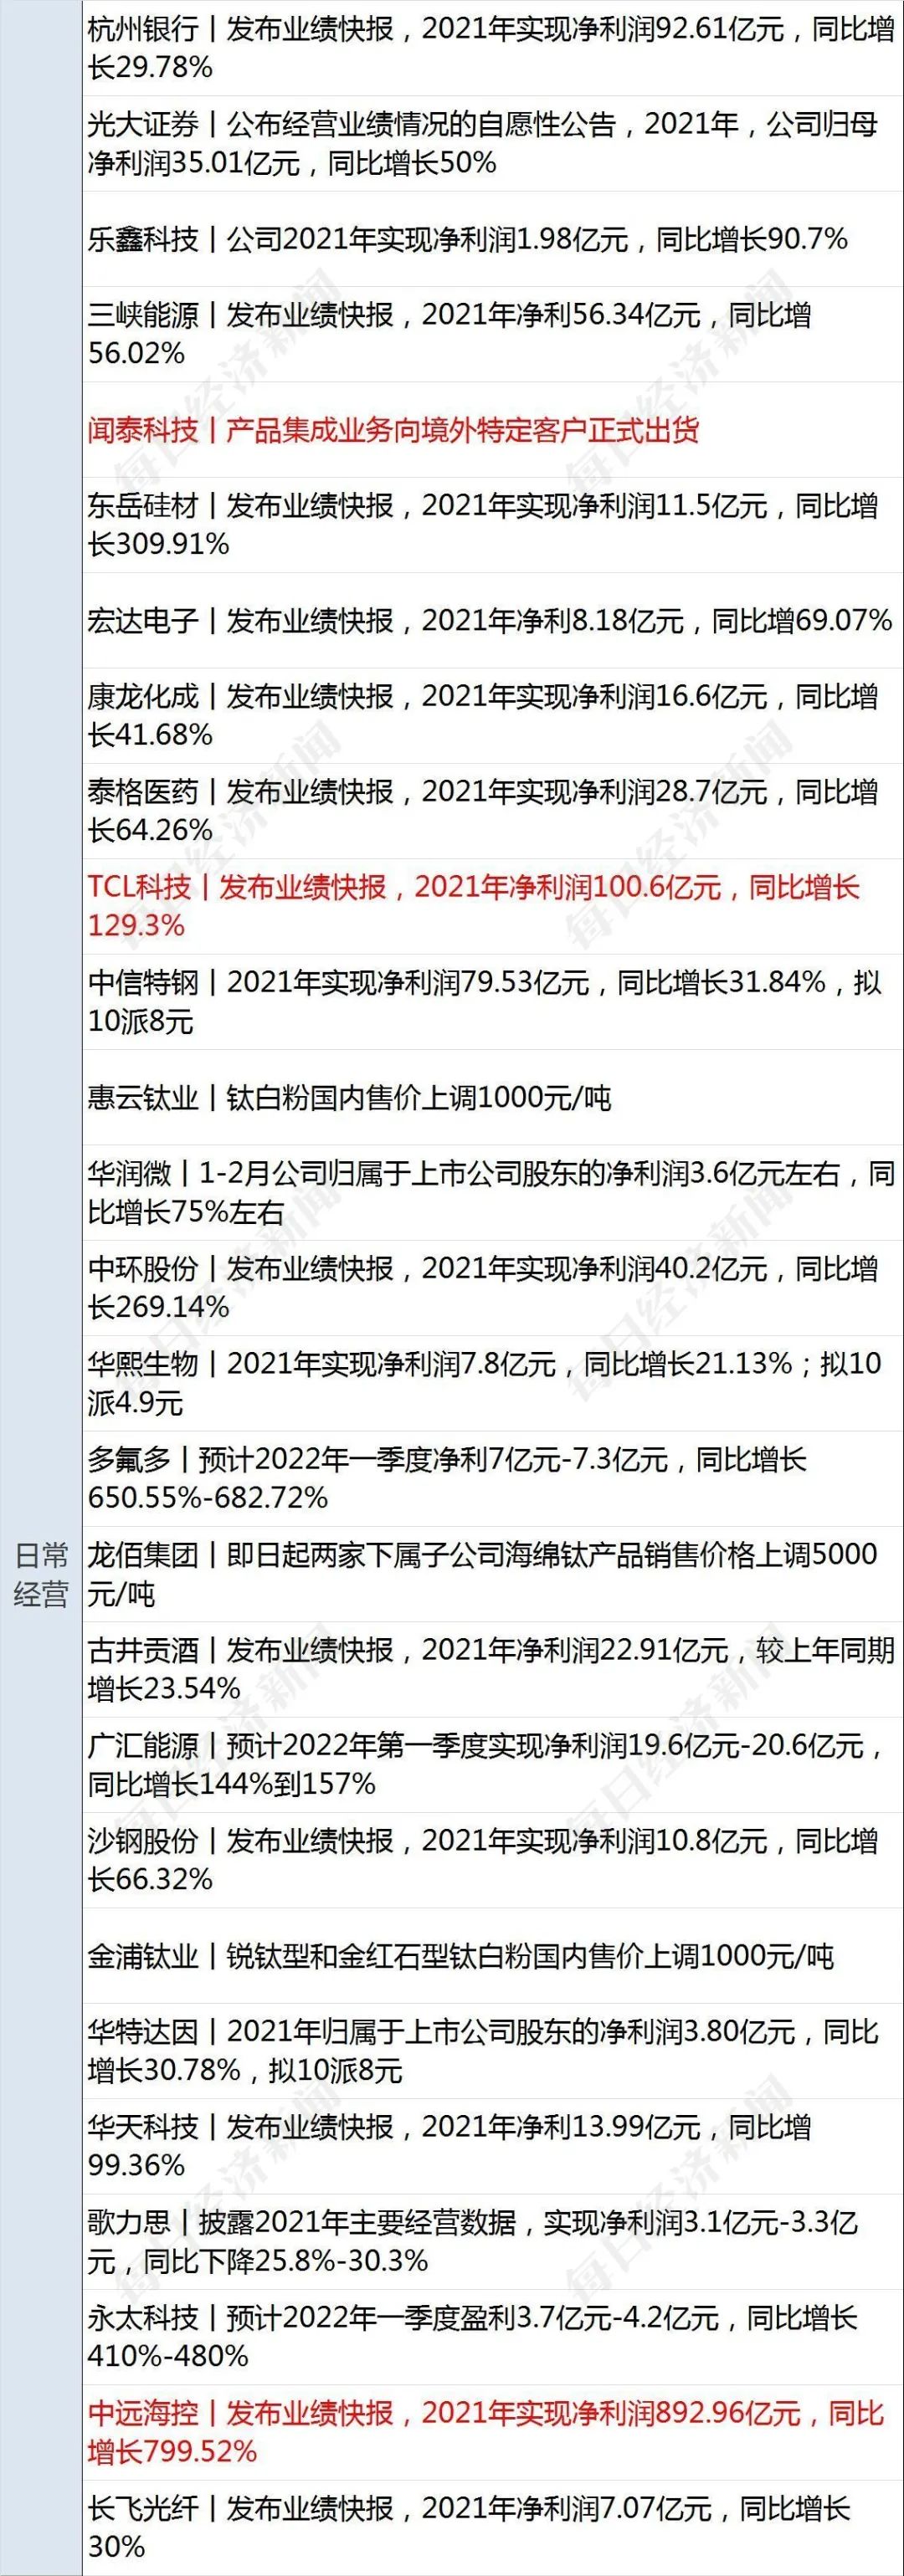 早财经 | 香港新增确诊24390例,死亡180人;切尔西老板阿布资产被英国冻结;证监会原副主席:期货和衍生品法出台已经为时不远w18.jpg